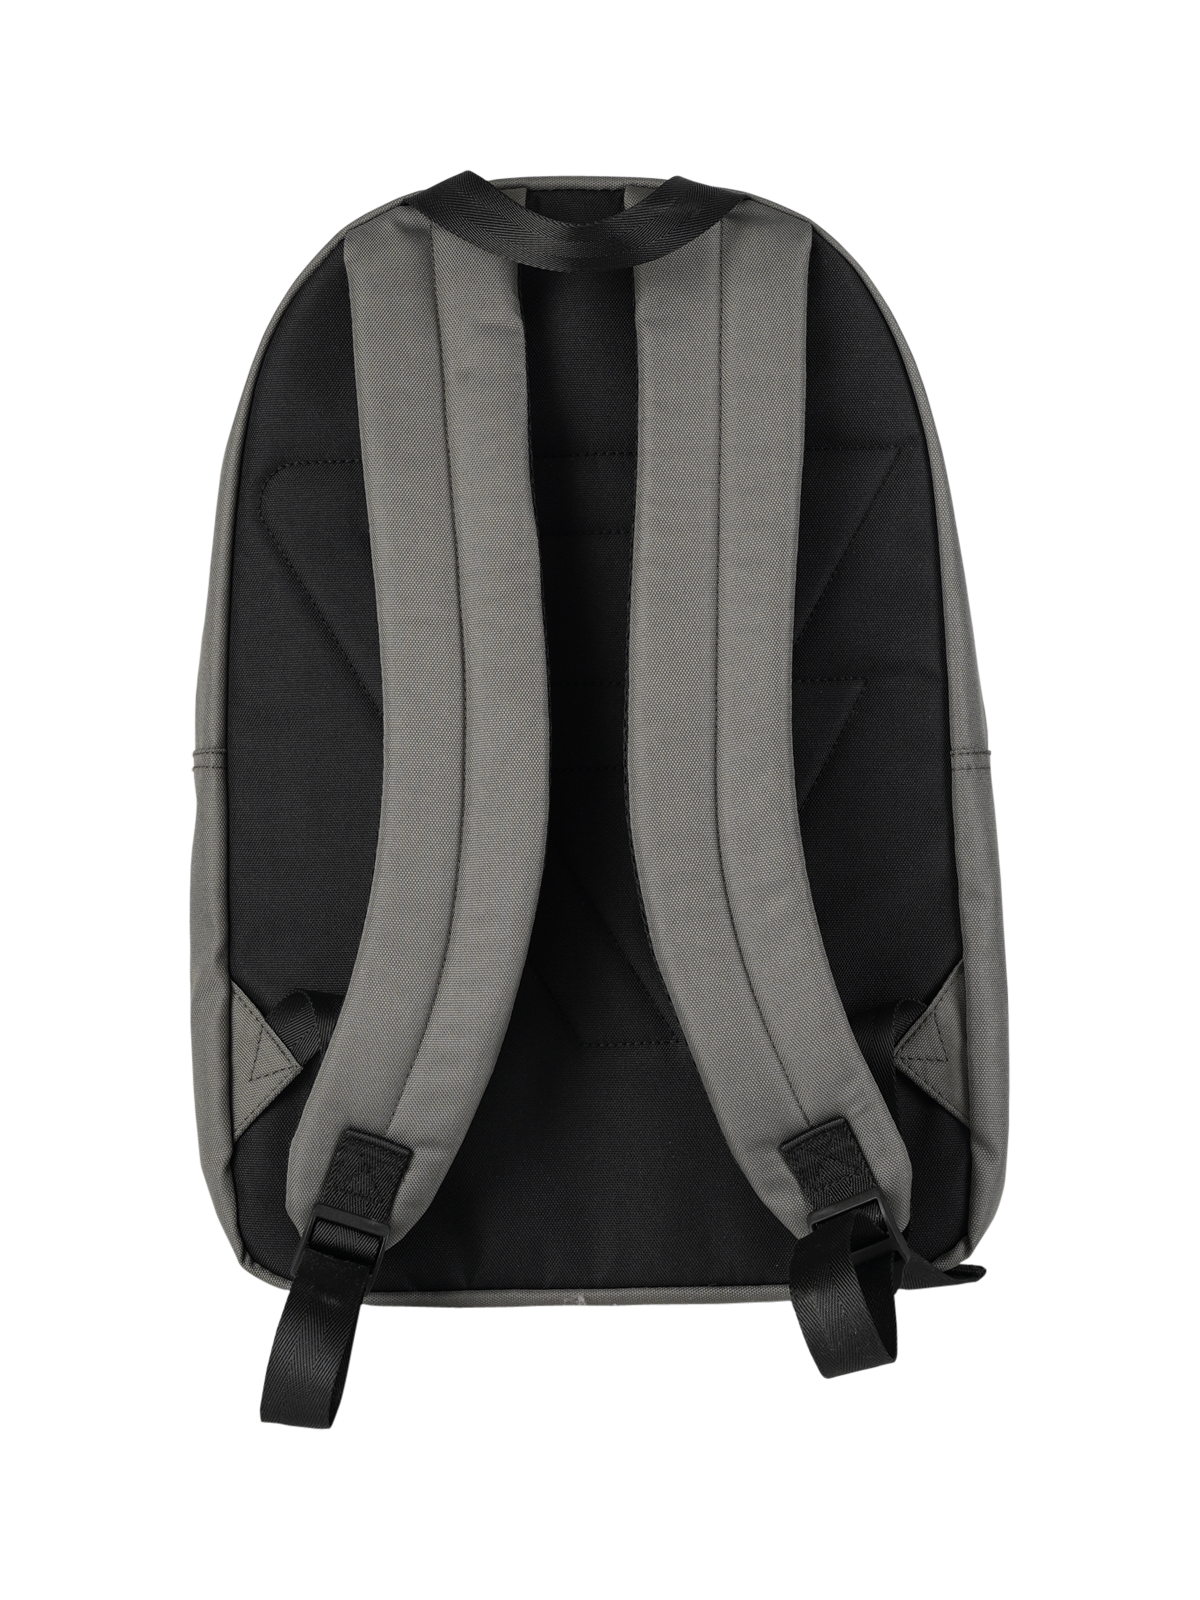 Makalu Backpack | Grey